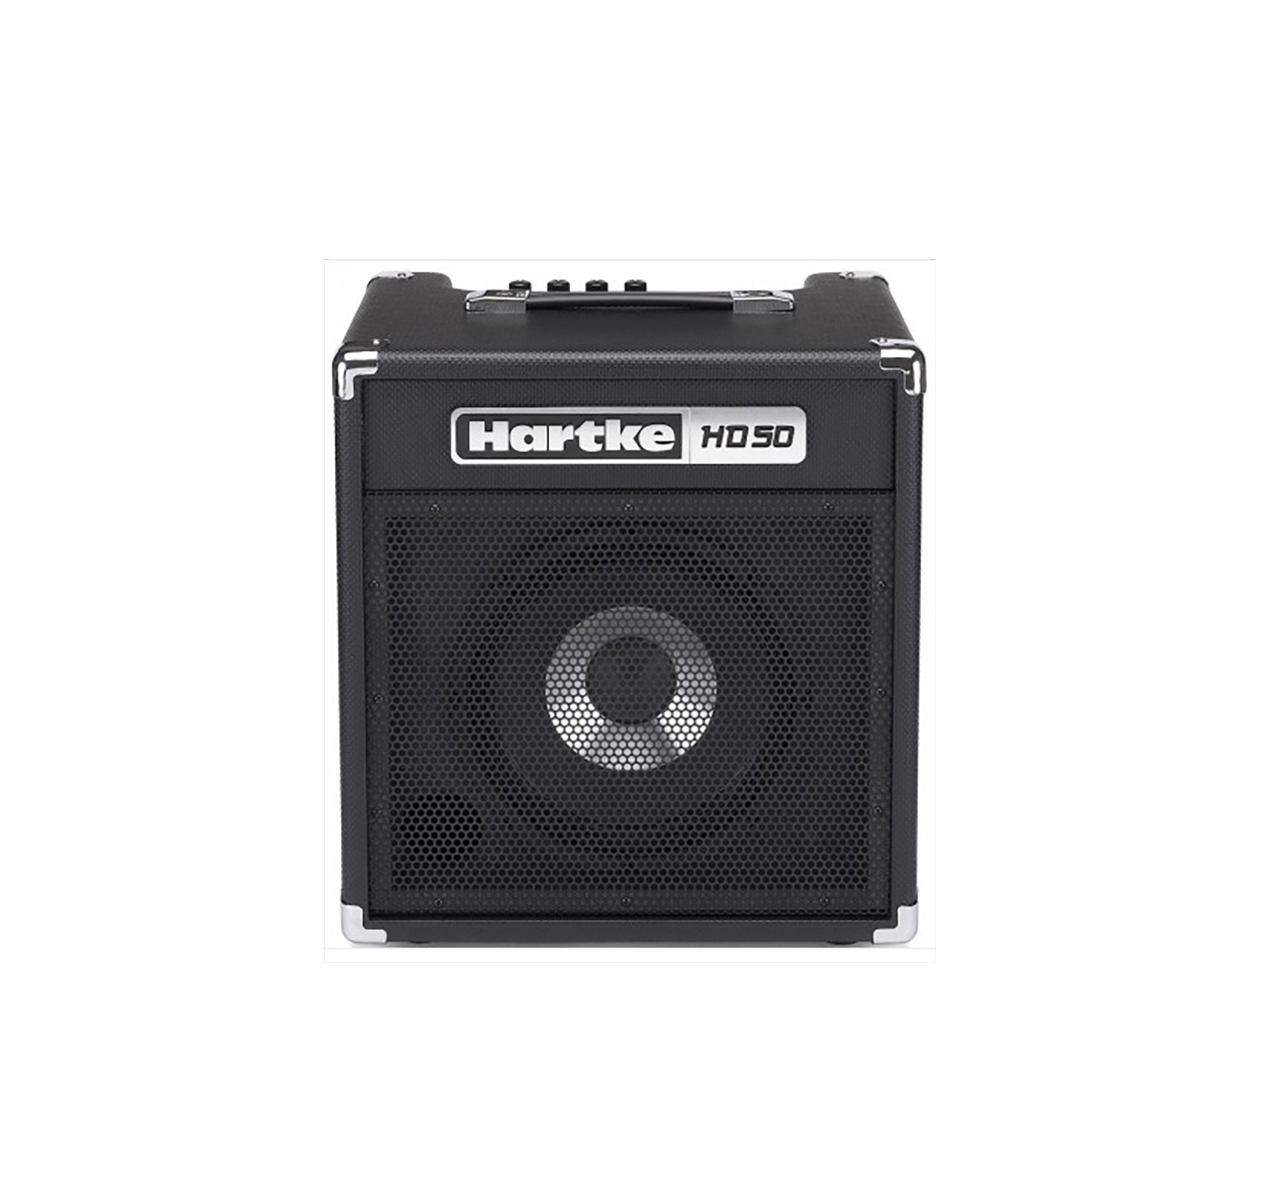 Hartke hd50 amplificador bajo electrico 50w alta potencia calidad -  OMEGASHOPPERU